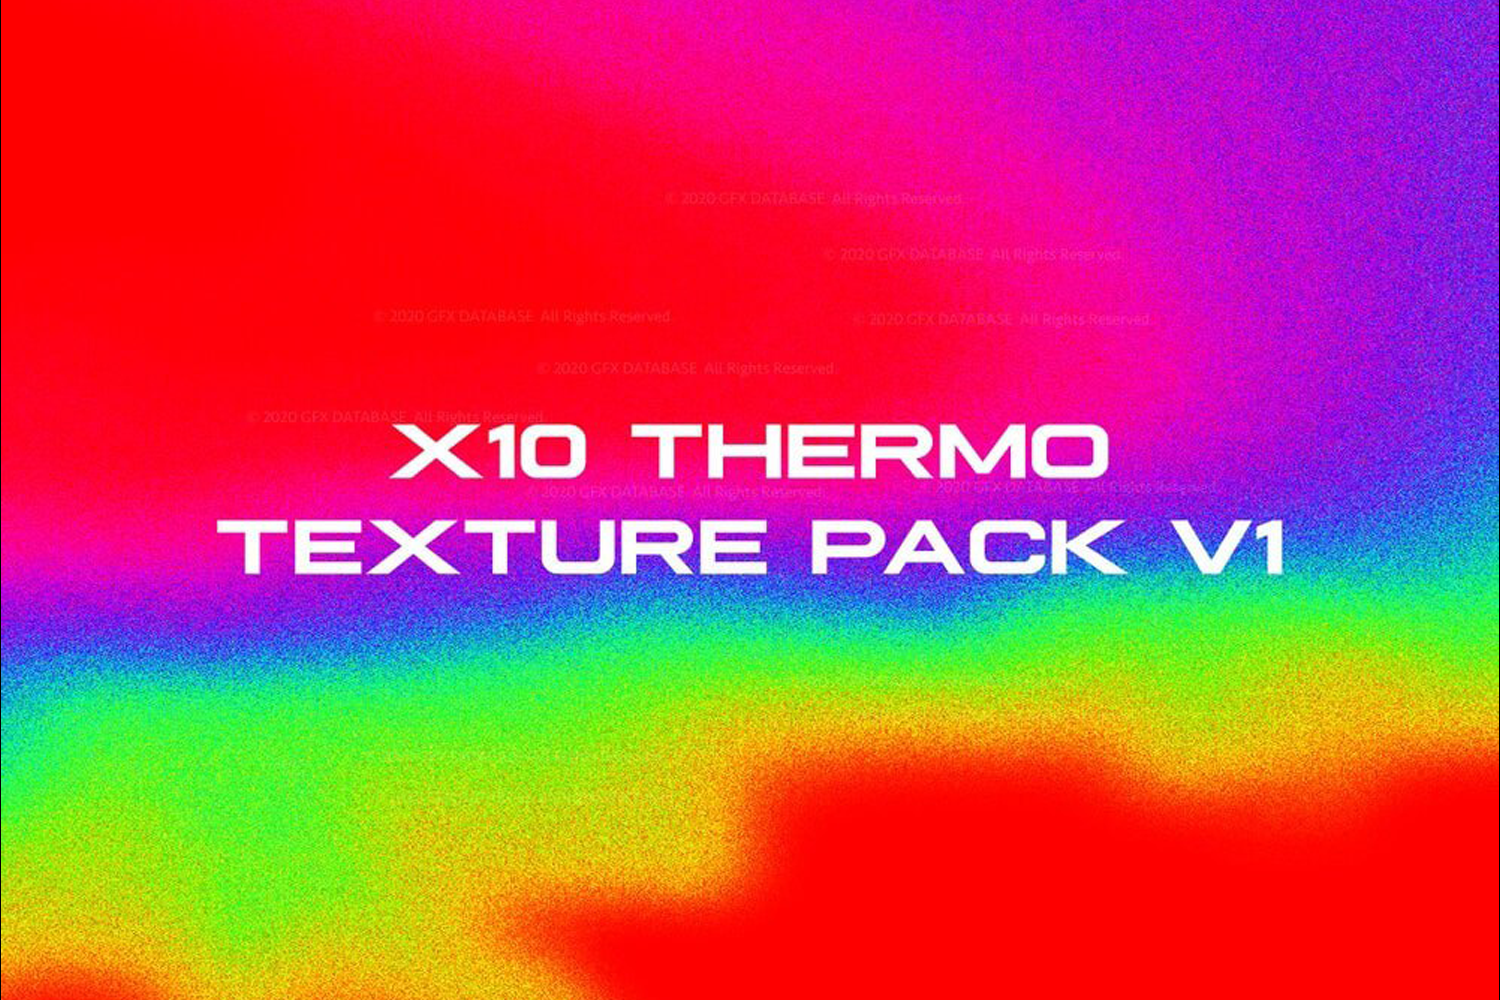 1939 10款炫彩热成像高清背景素材 X10 Thermo Texture Pack V1